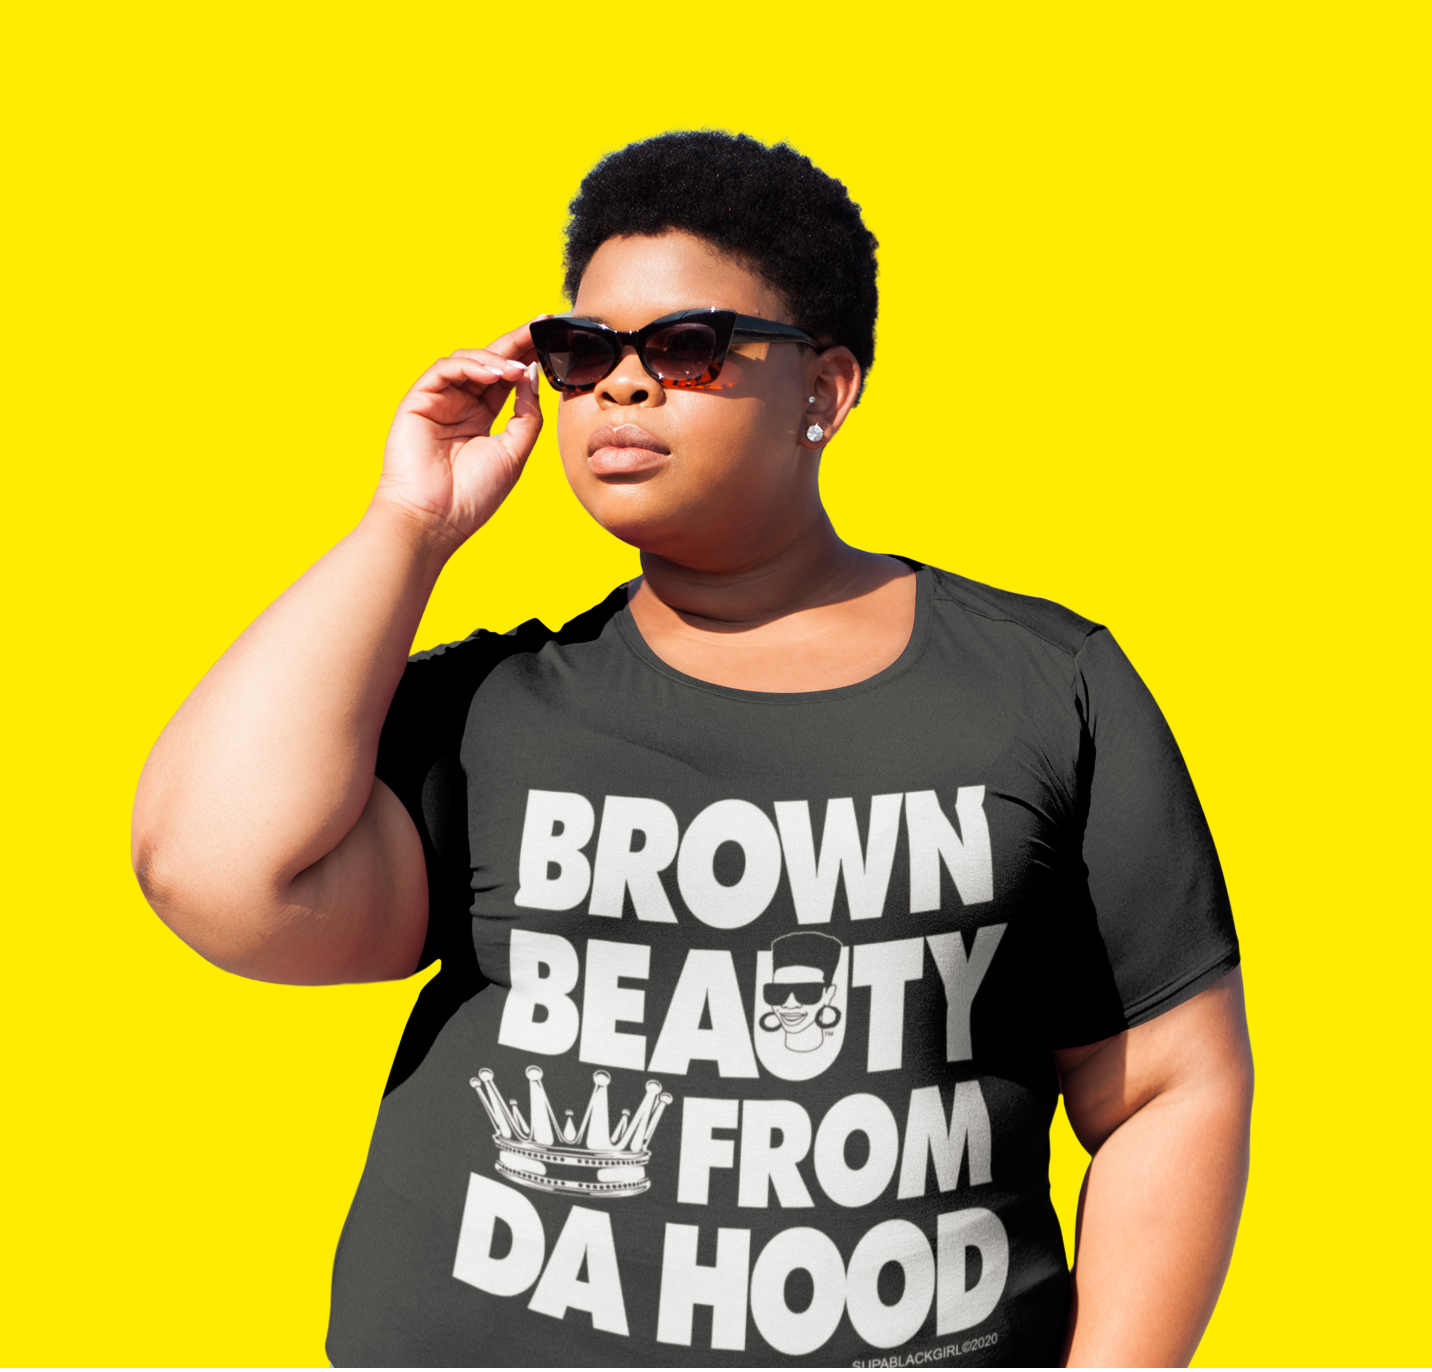 Brown Beauty From Da Hood T-shirt